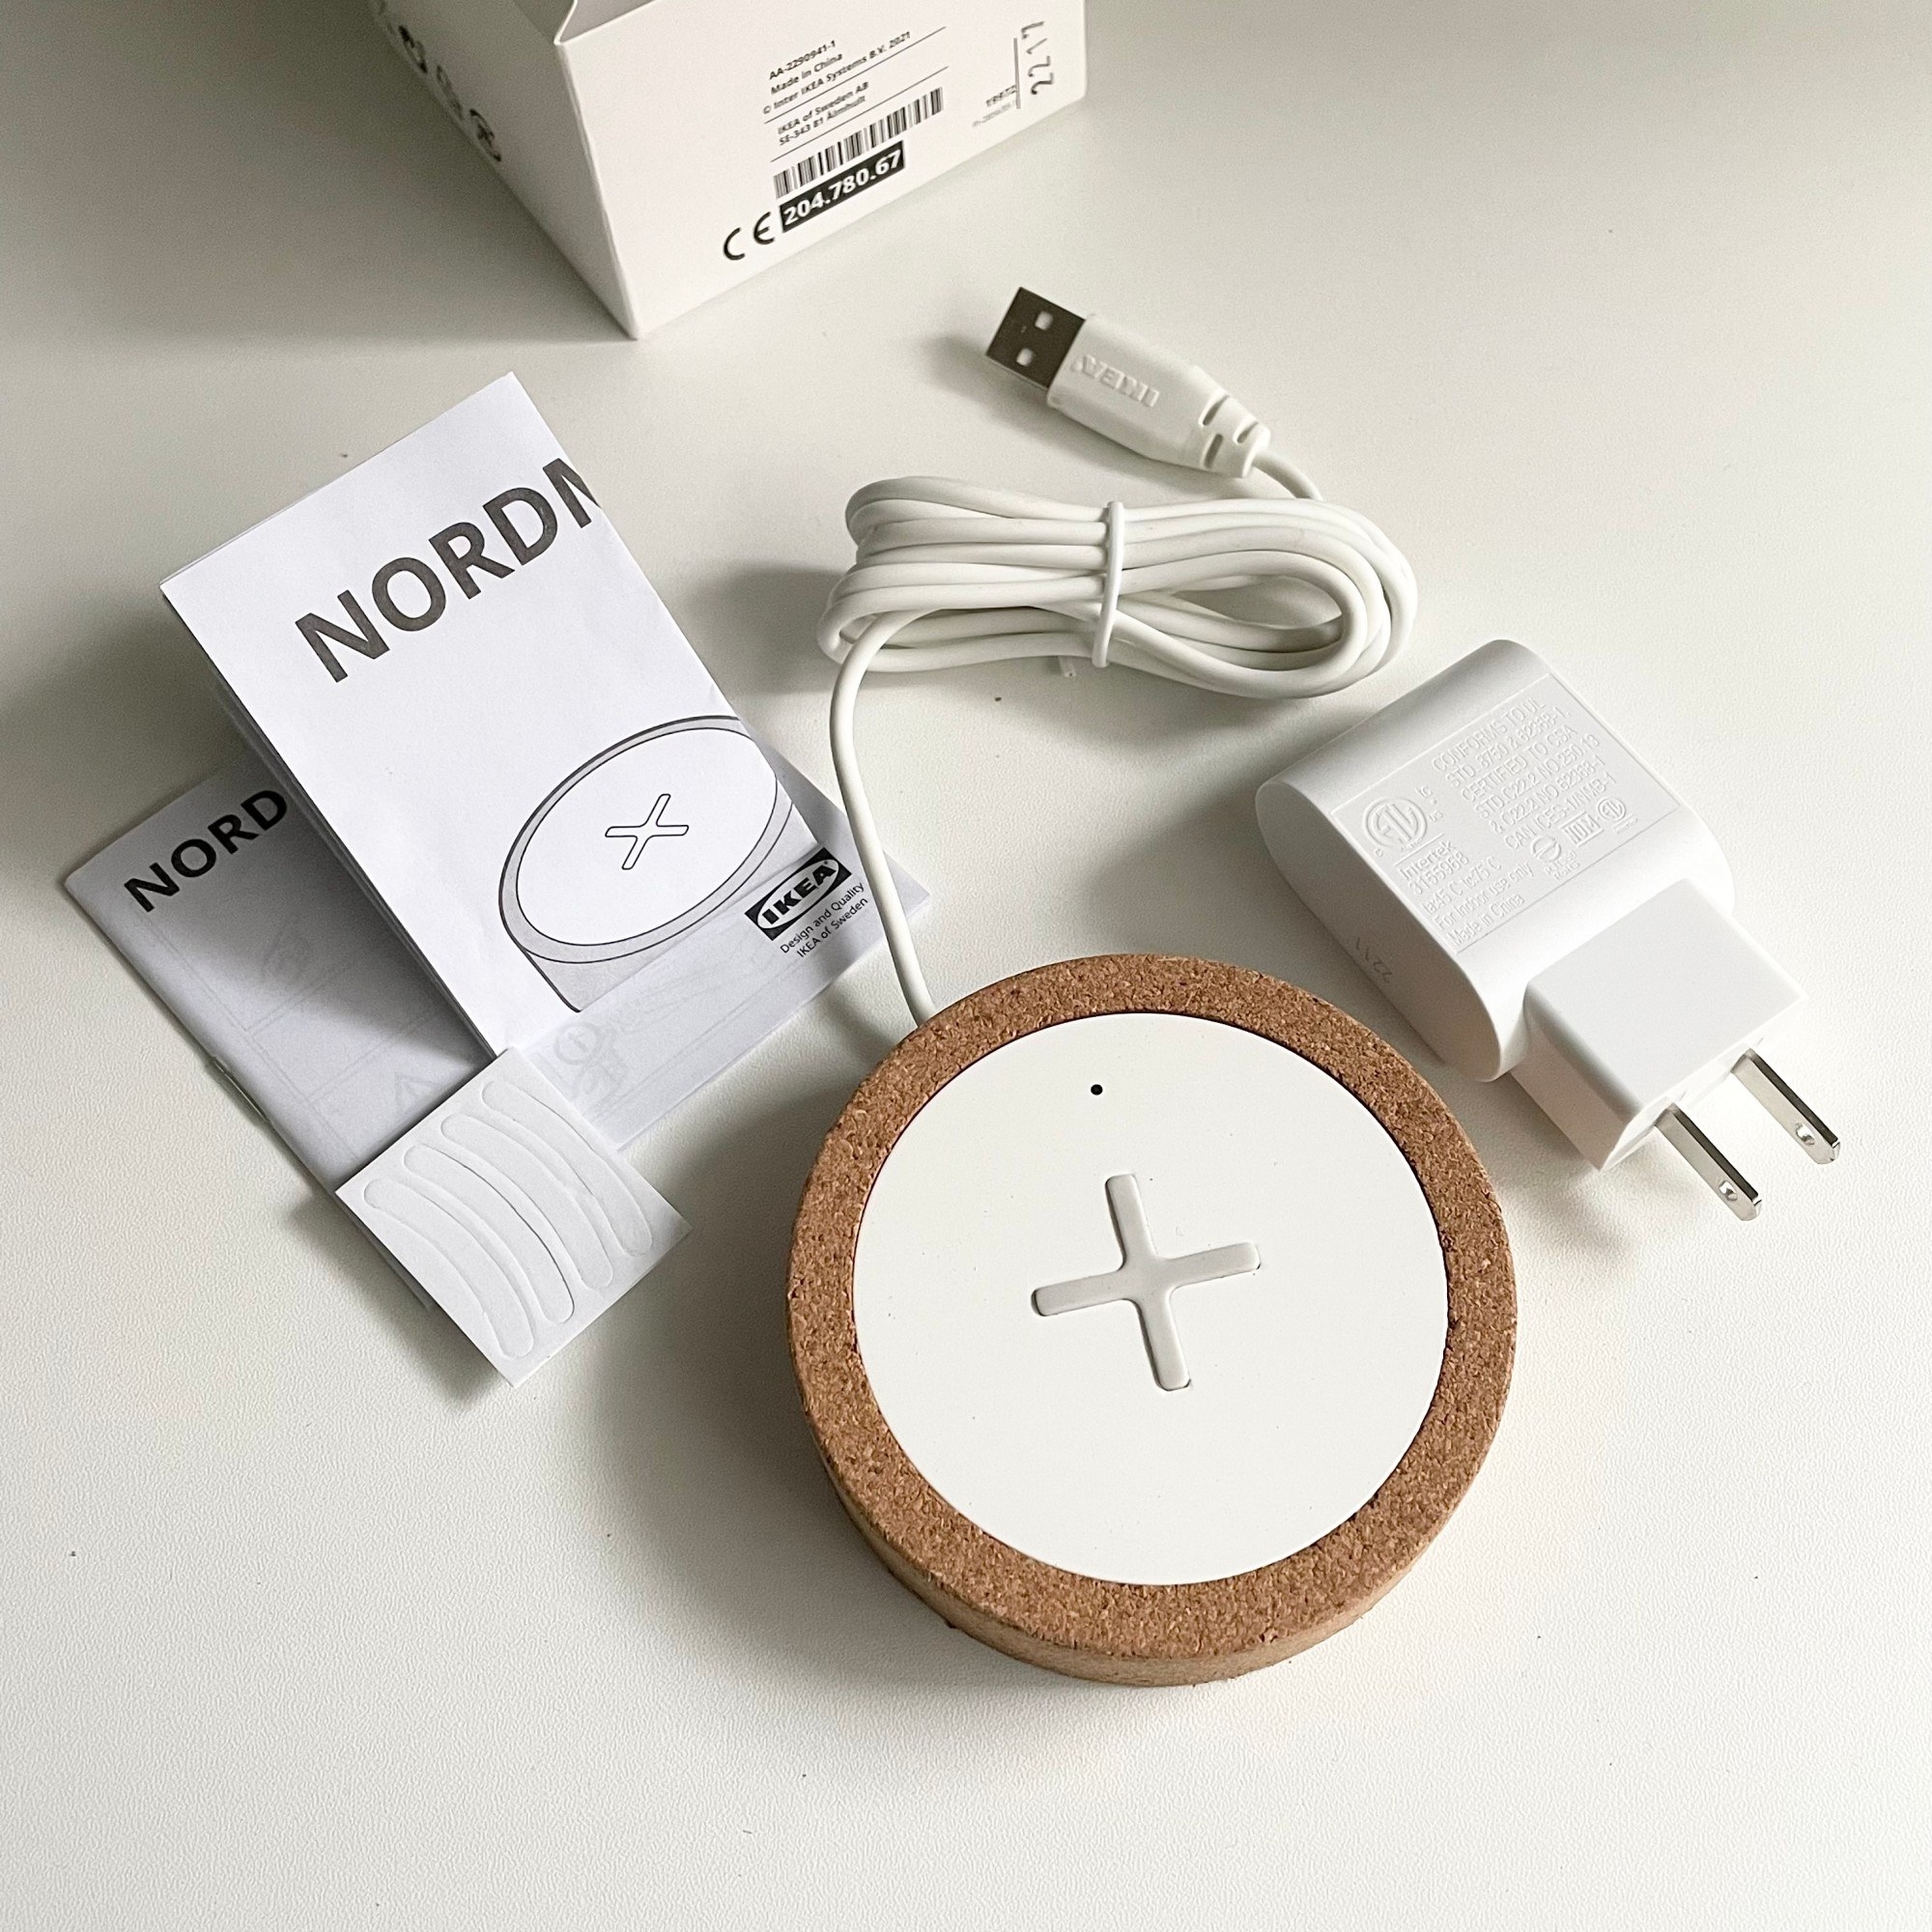 IKEA（イケア）のおすすめの便利グッズ「NORDMÄRKE ノールドメルケ ワイヤレス充電器」